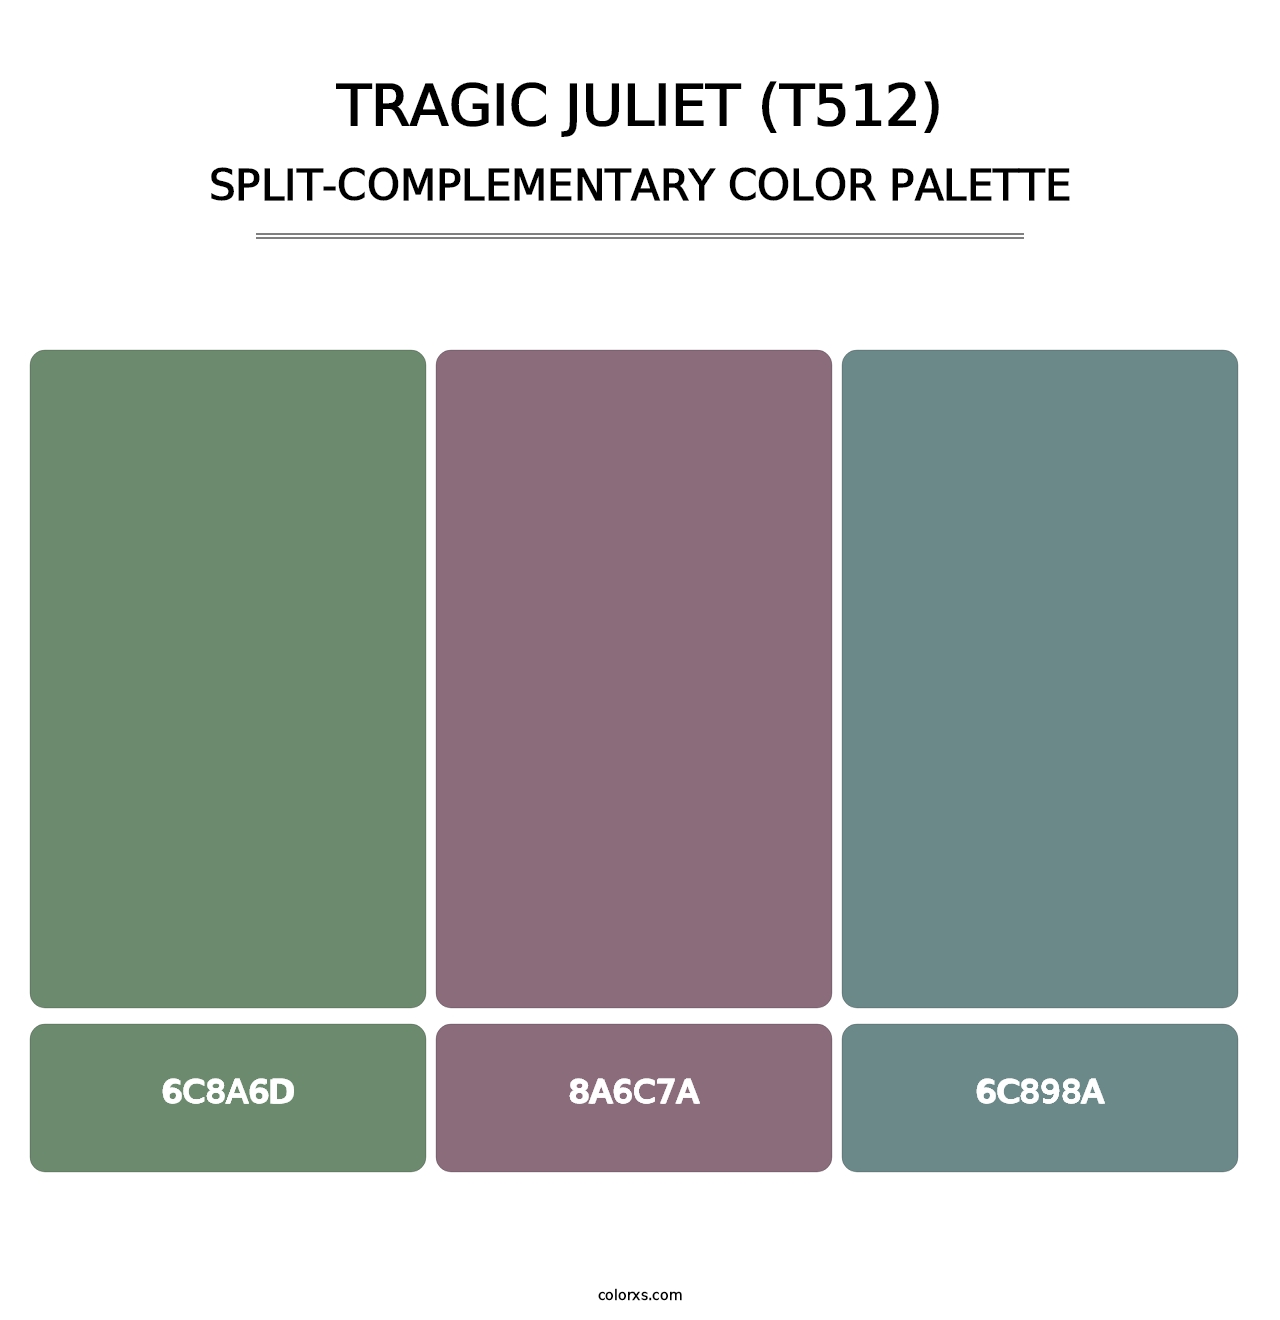 Tragic Juliet (T512) - Split-Complementary Color Palette